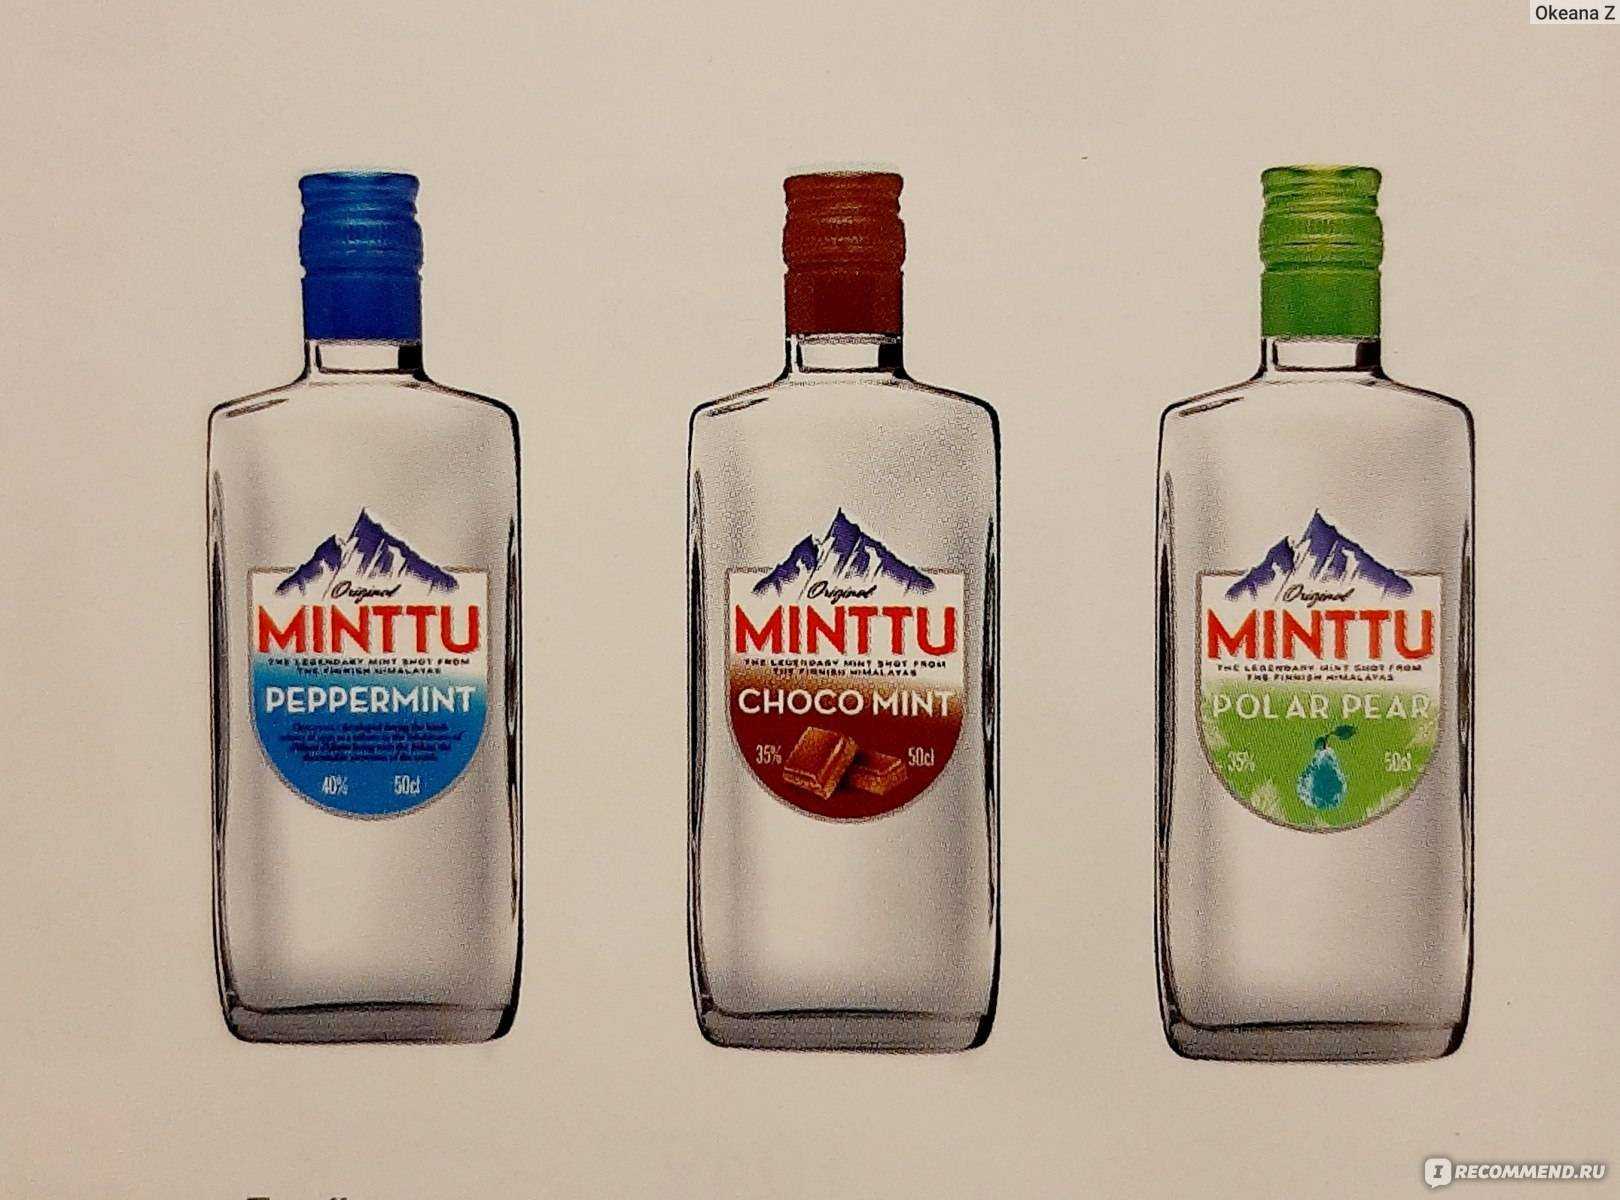 Ликер «минту» — крепкий элитный алкоголь из финляндии